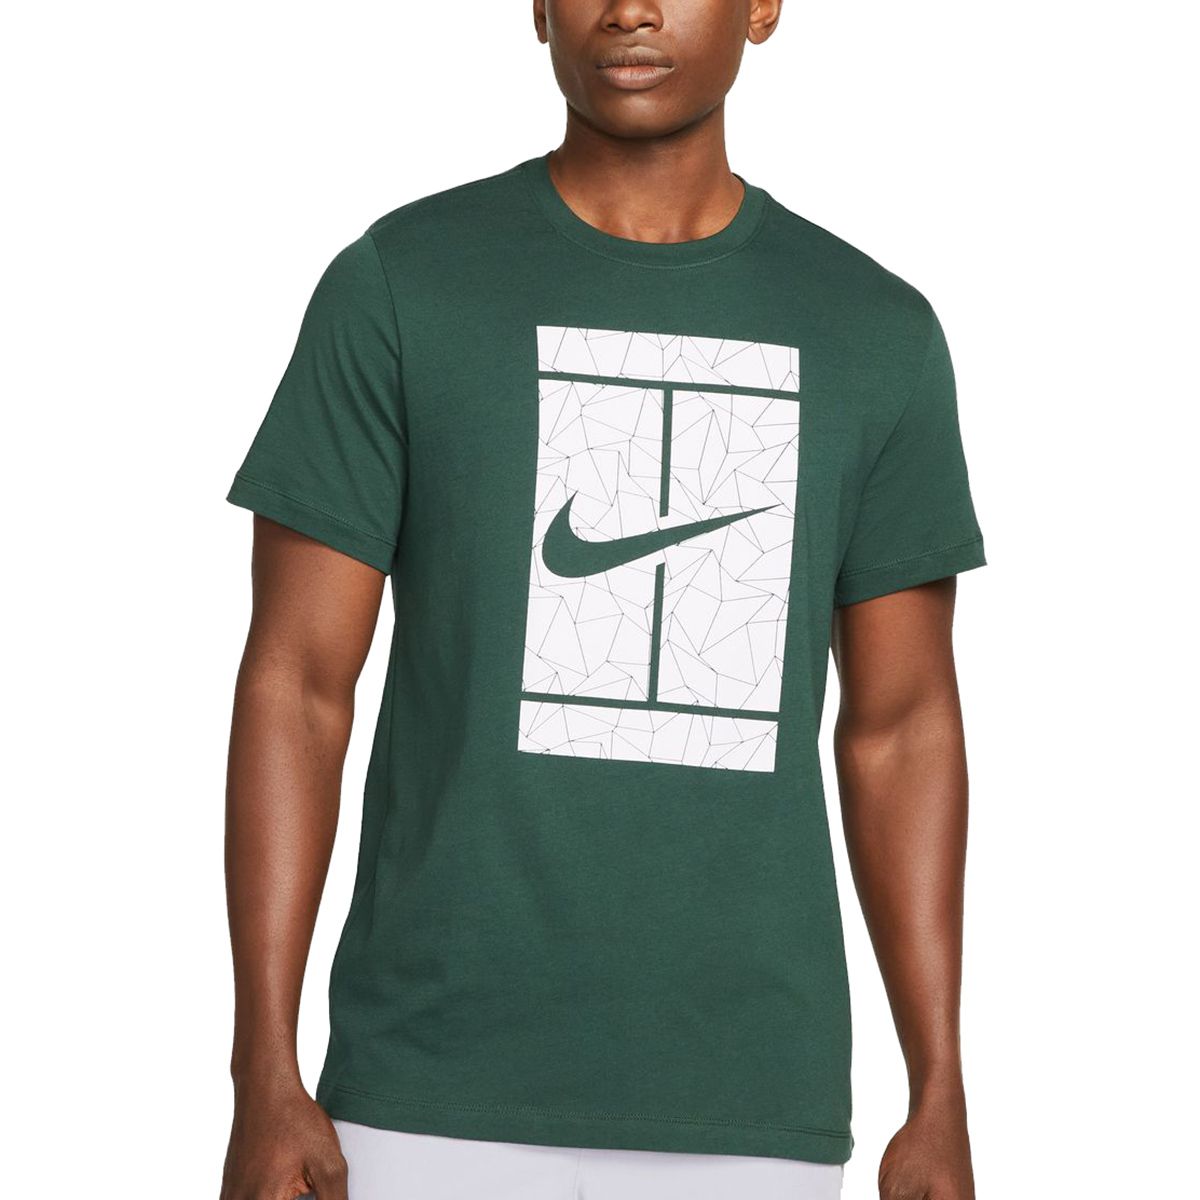 T-Shirt homme Tennis